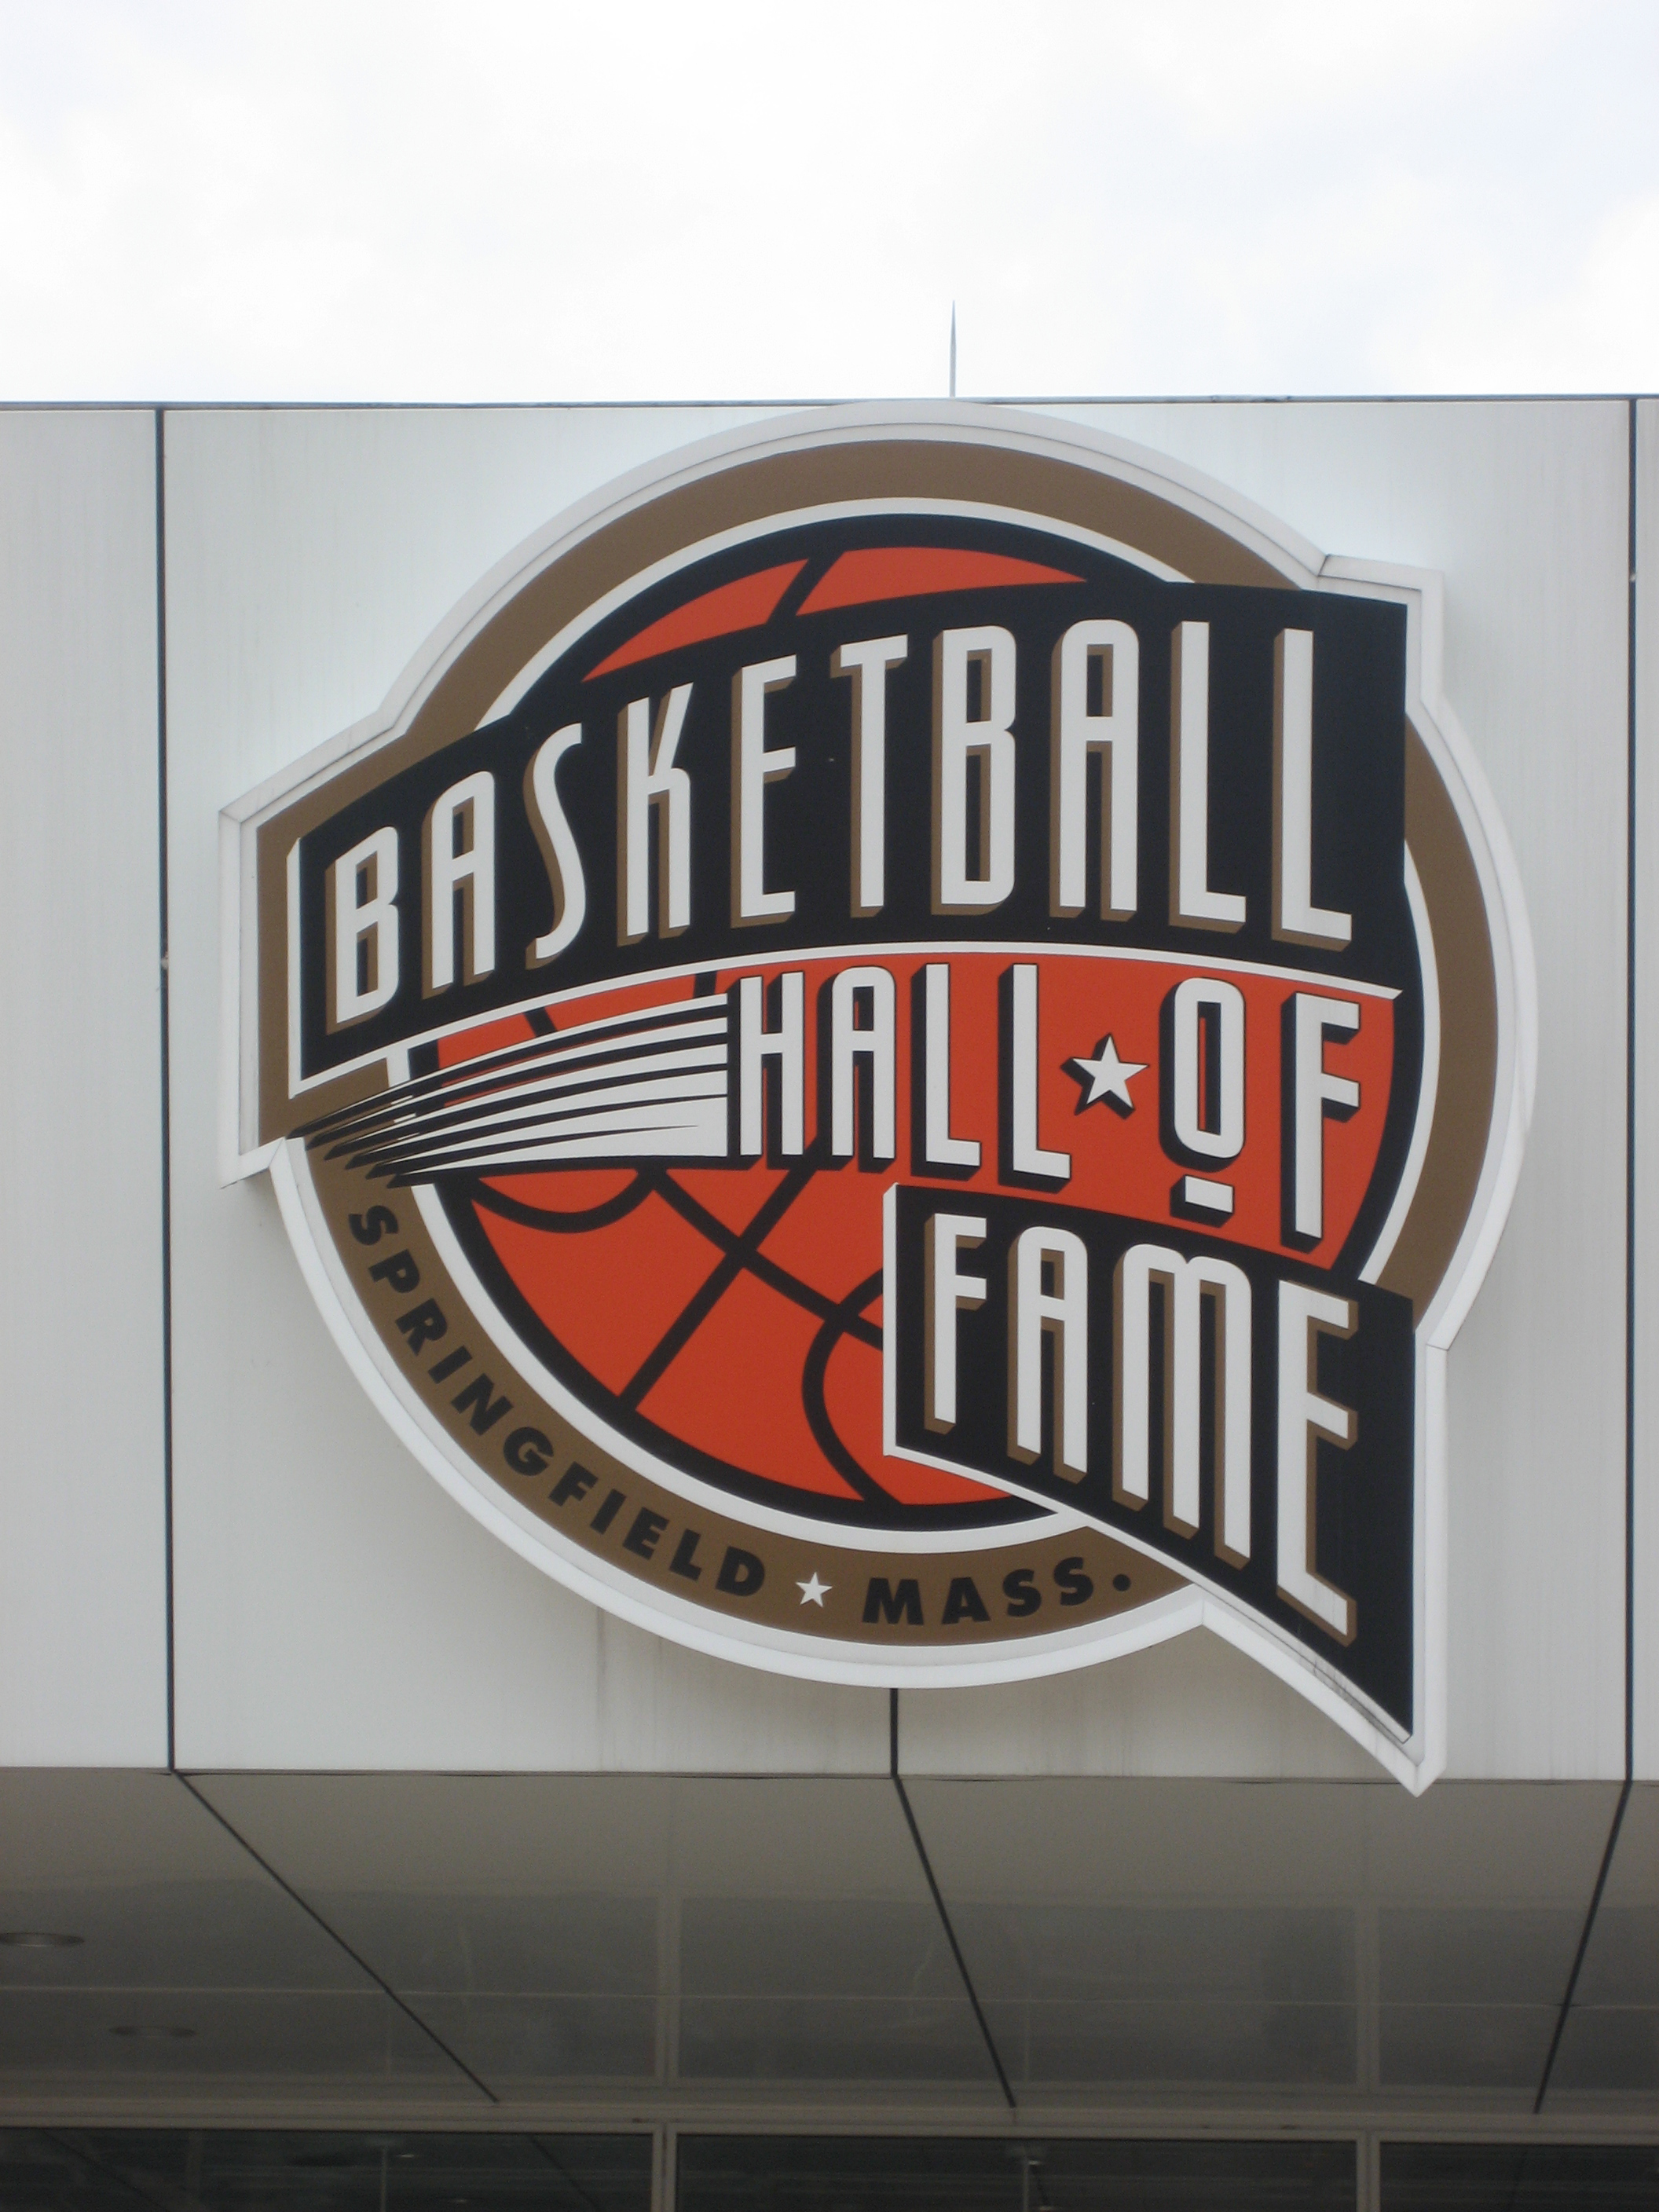 » NBA Hall of Fame new class